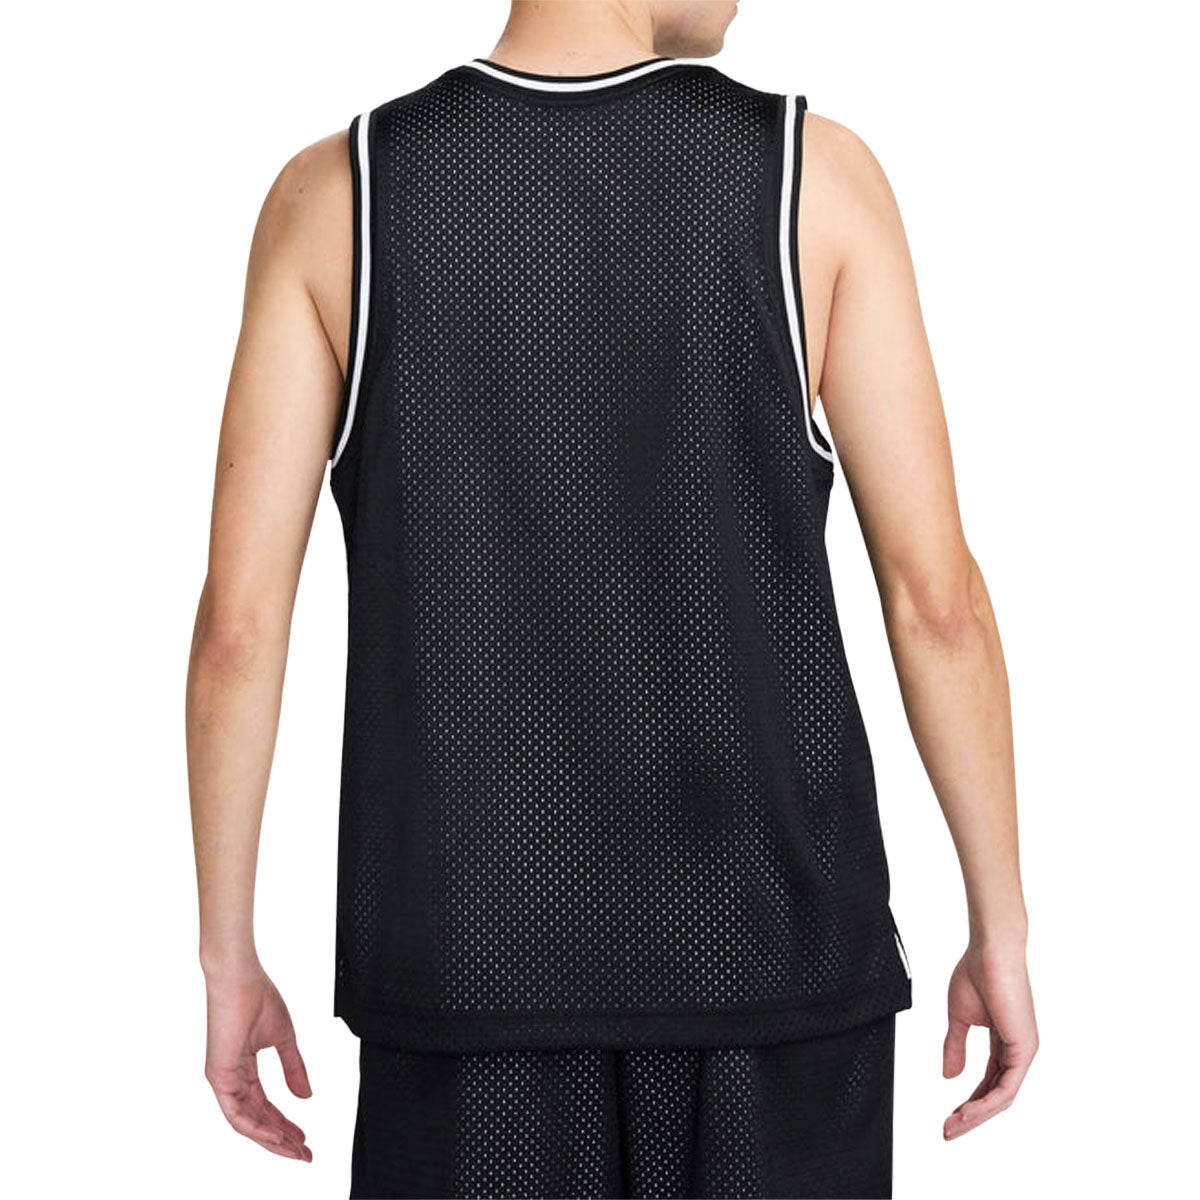 Nike SB Basketball Skate Jersey - Black/White image 2